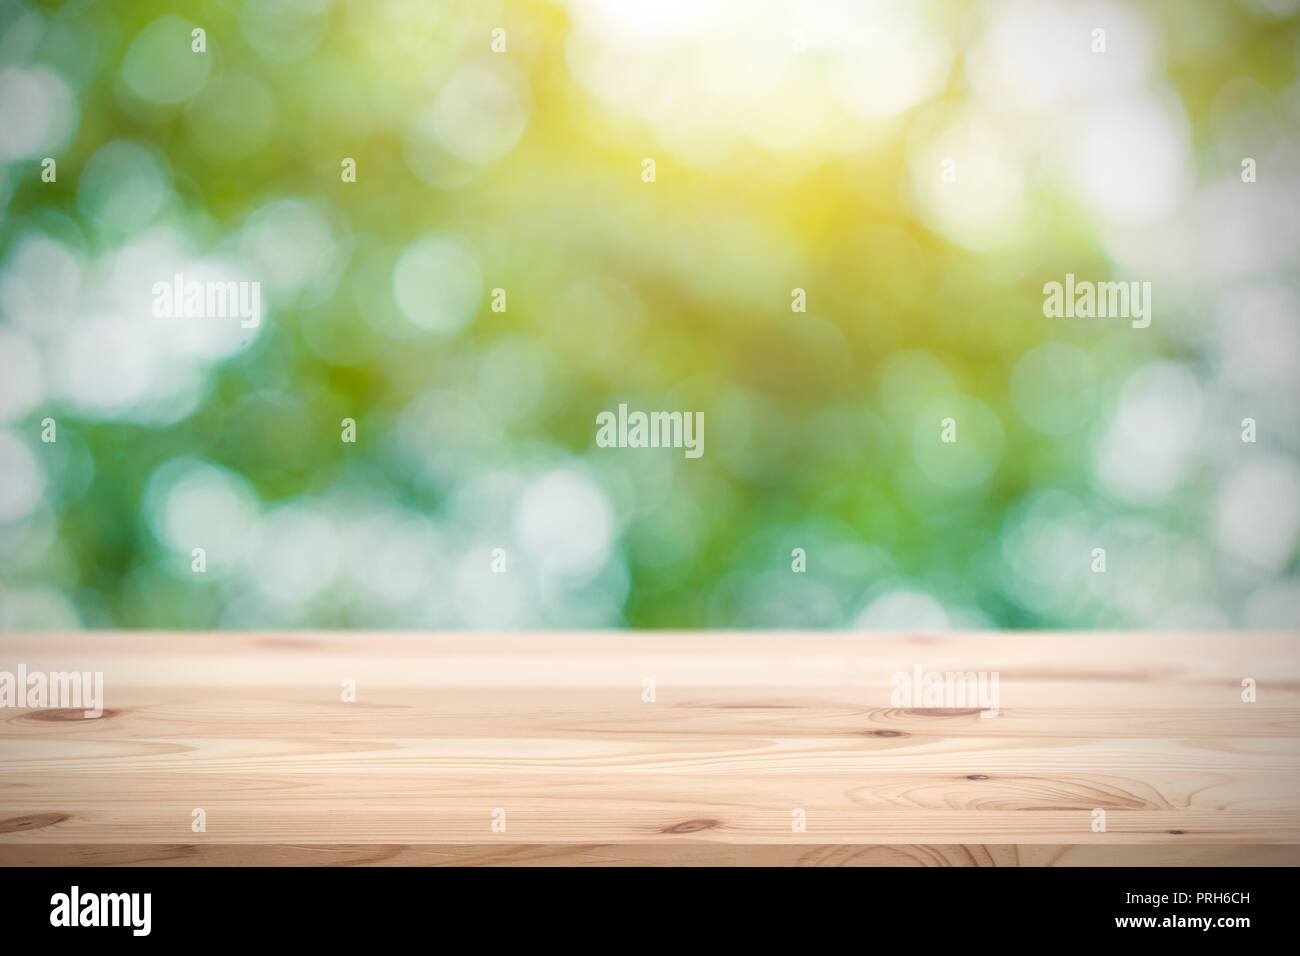 Blur grün mit hölzernen Tisch Platz für Produkte Display montage Hintergrund Stockfoto